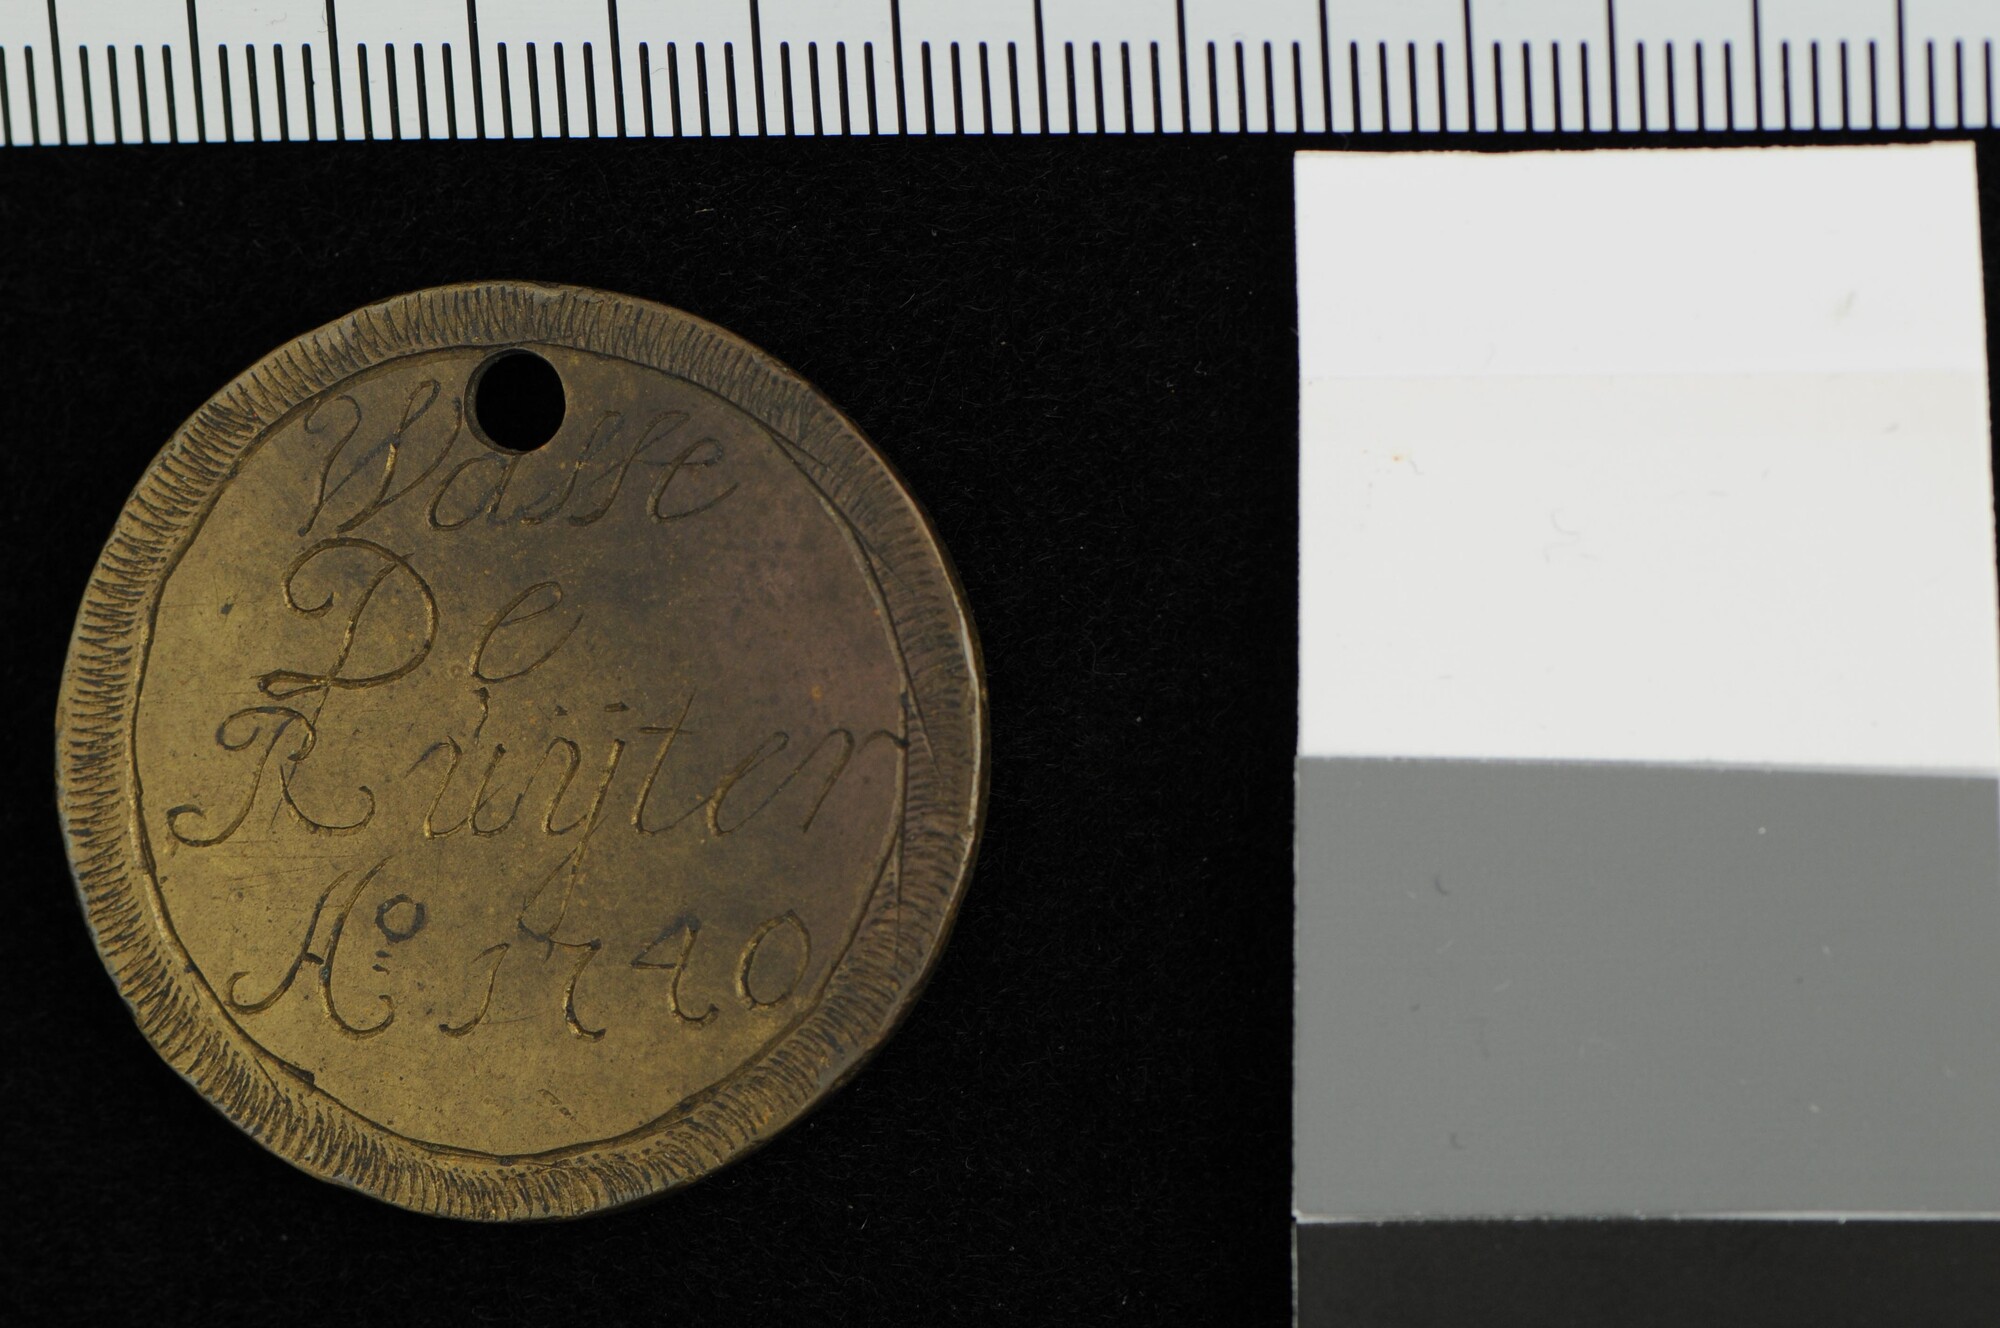 A.0023(125)4; Gildepenning van het Klein Binnenlandsvaardersgilde van Hoorn; gildepenning